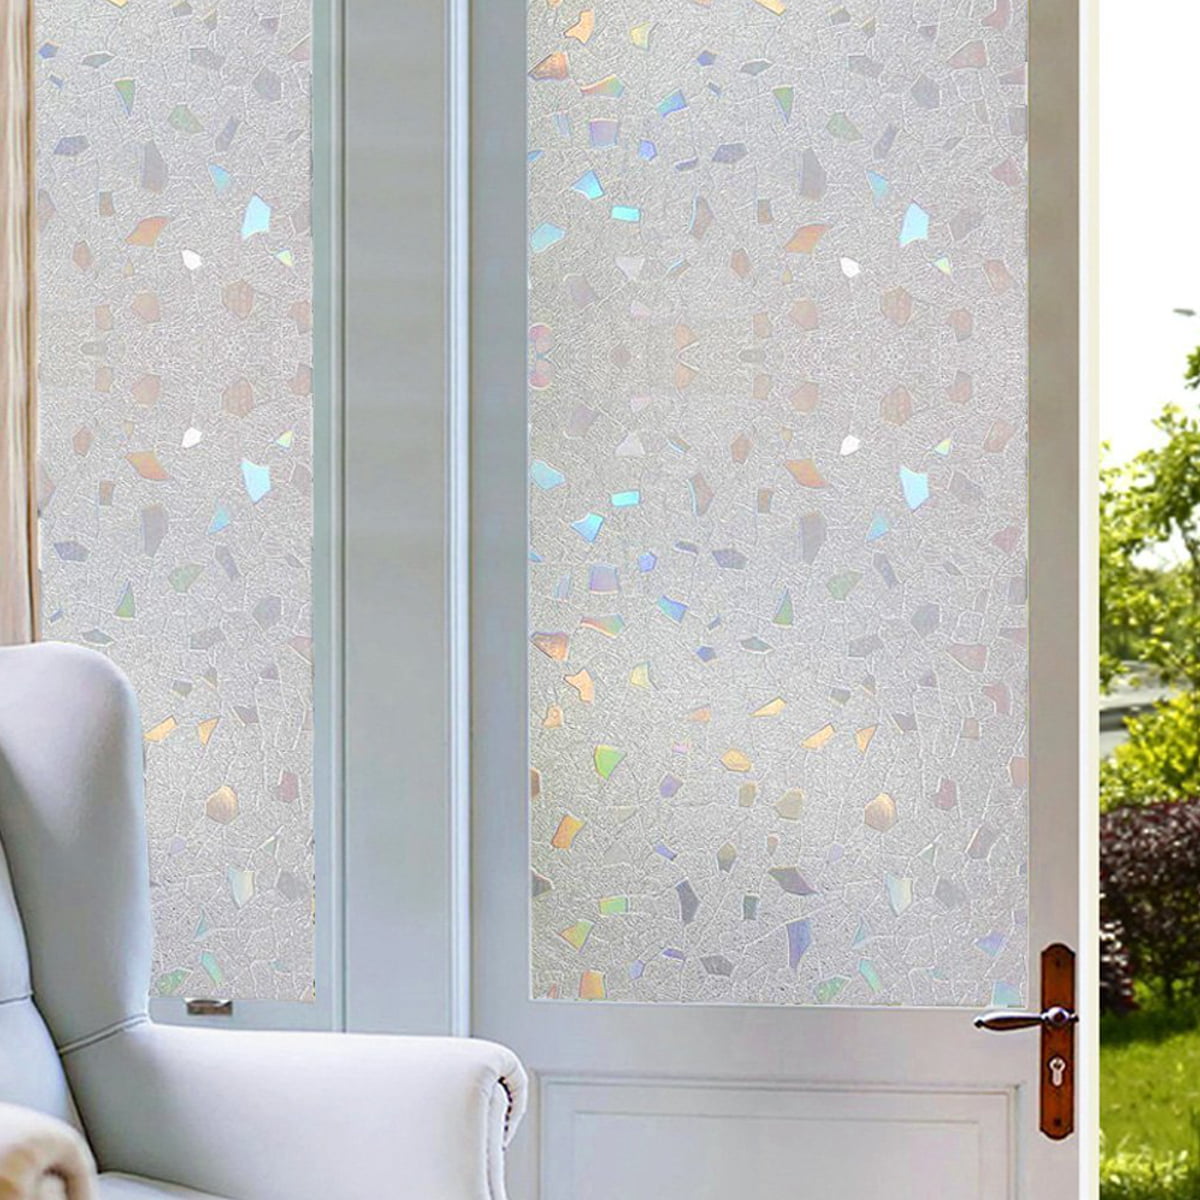 Privacy Window Film Waterproof Glass Door Adhesive Window Sticker Decals Decor 